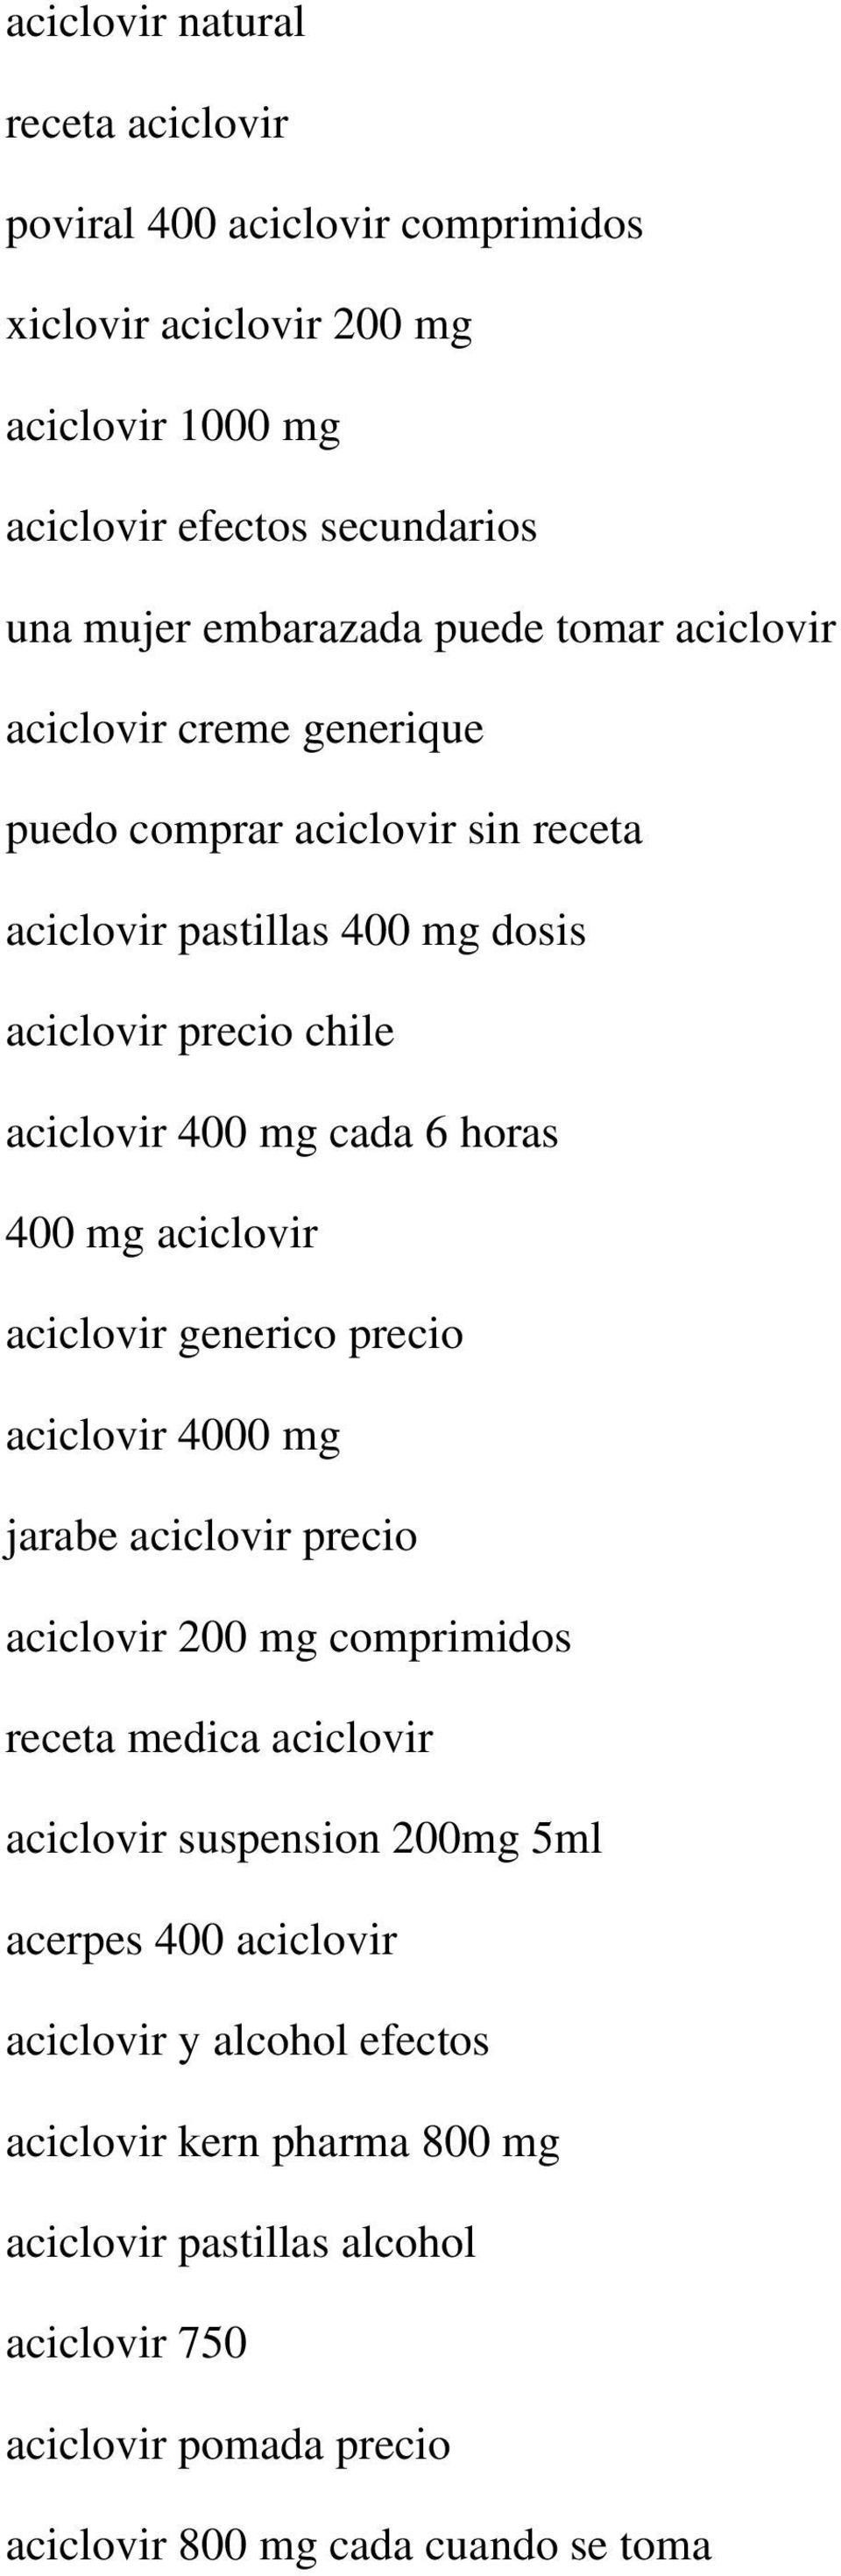 aciclovir aciclovir generico precio aciclovir 4000 mg jarabe aciclovir precio aciclovir 200 mg comprimidos receta medica aciclovir aciclovir suspension 200mg 5ml acerpes